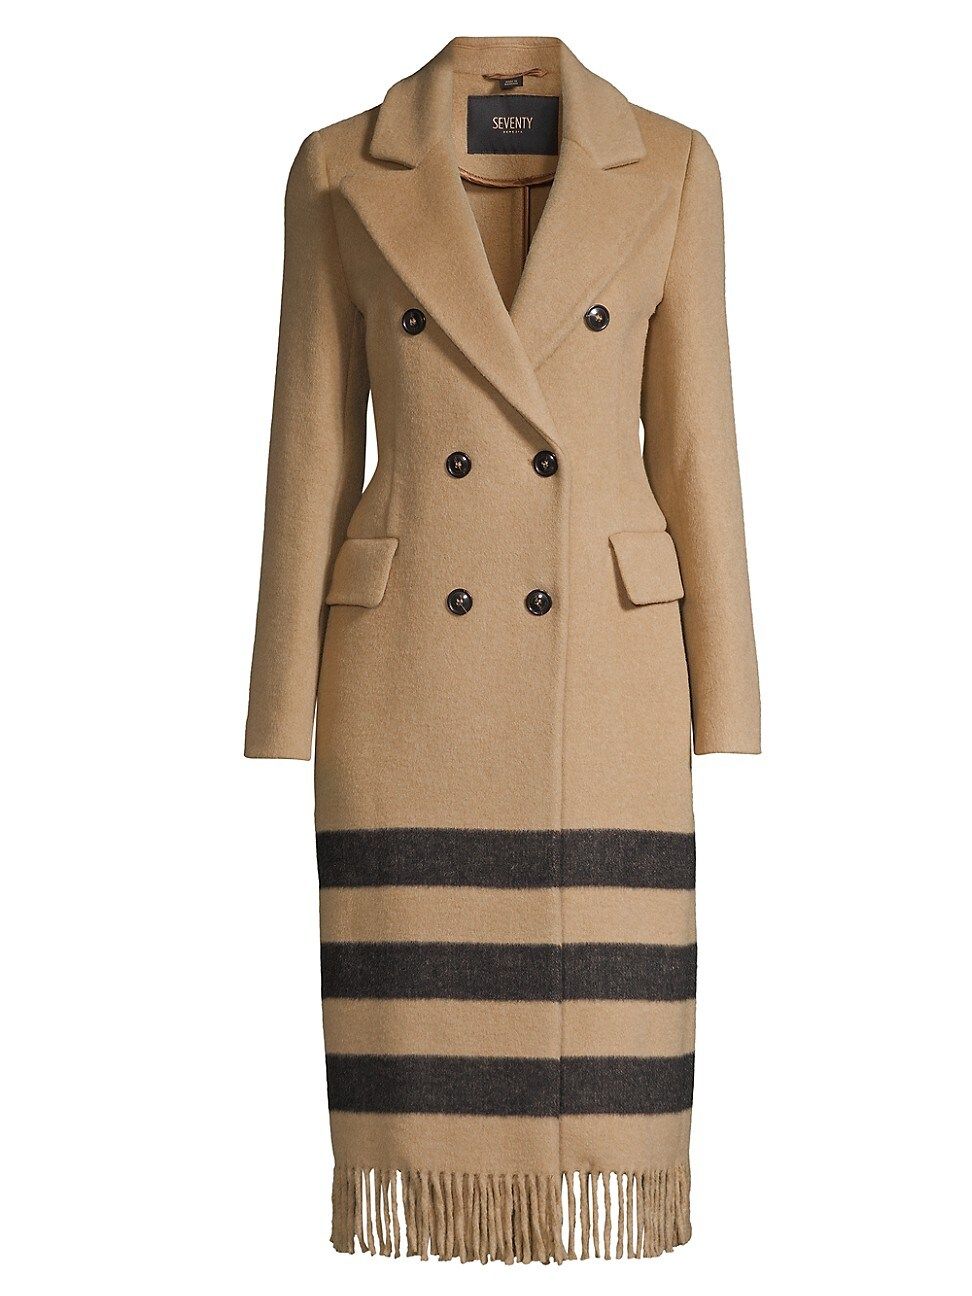 Seventy Women's Stripe Hem Double-Breasted Coat - Cammello - Size 6 | Saks Fifth Avenue